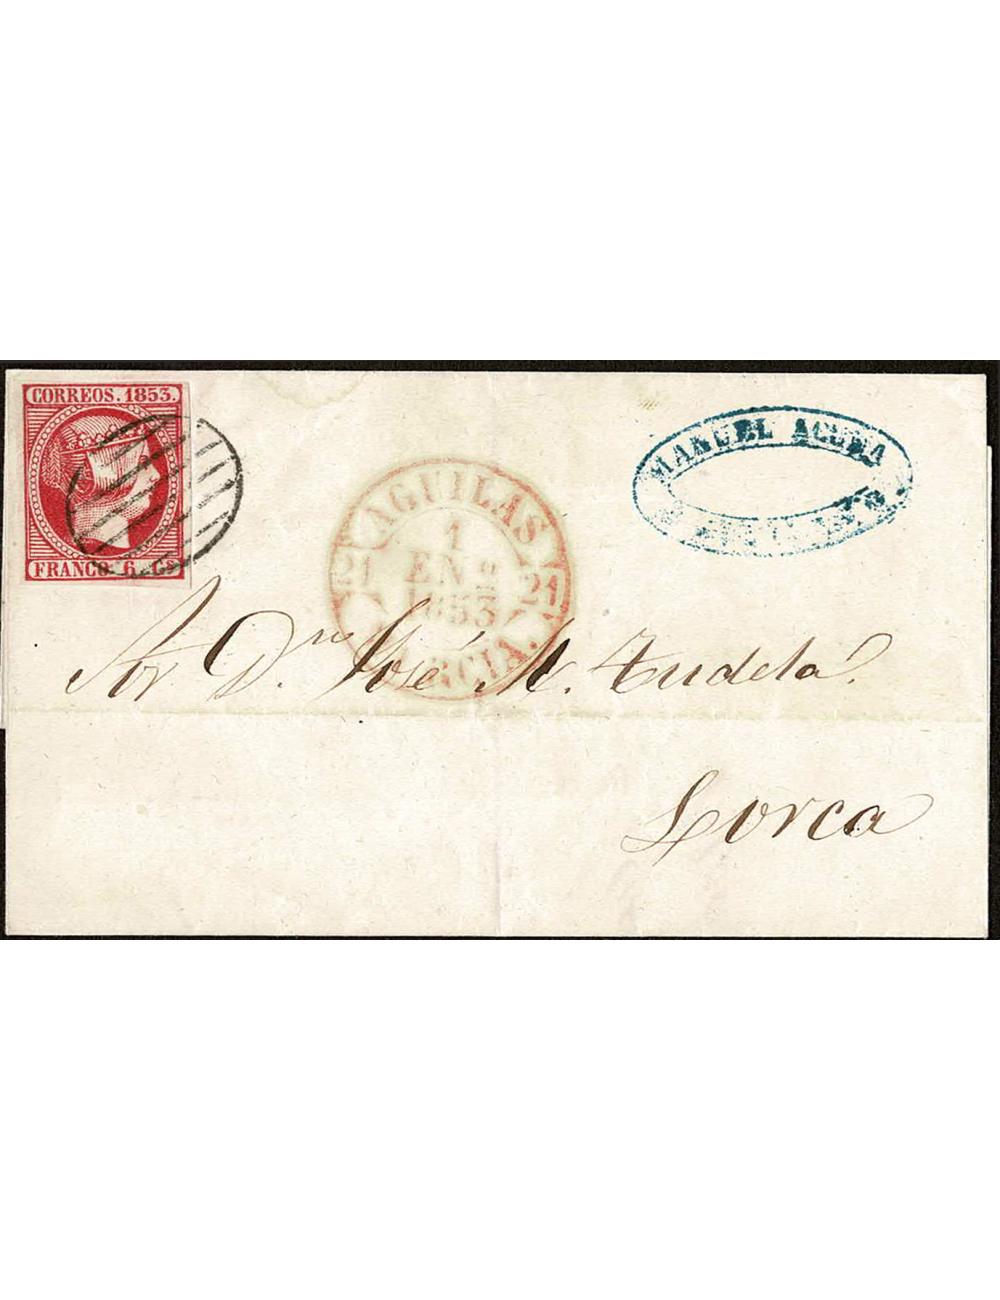 1853 (1 ENE) Águilas a Lorca. 6 cuartos rojo mat. parrilla. En el frente fechador. Primer día de circulación. Envuelta de lujo.